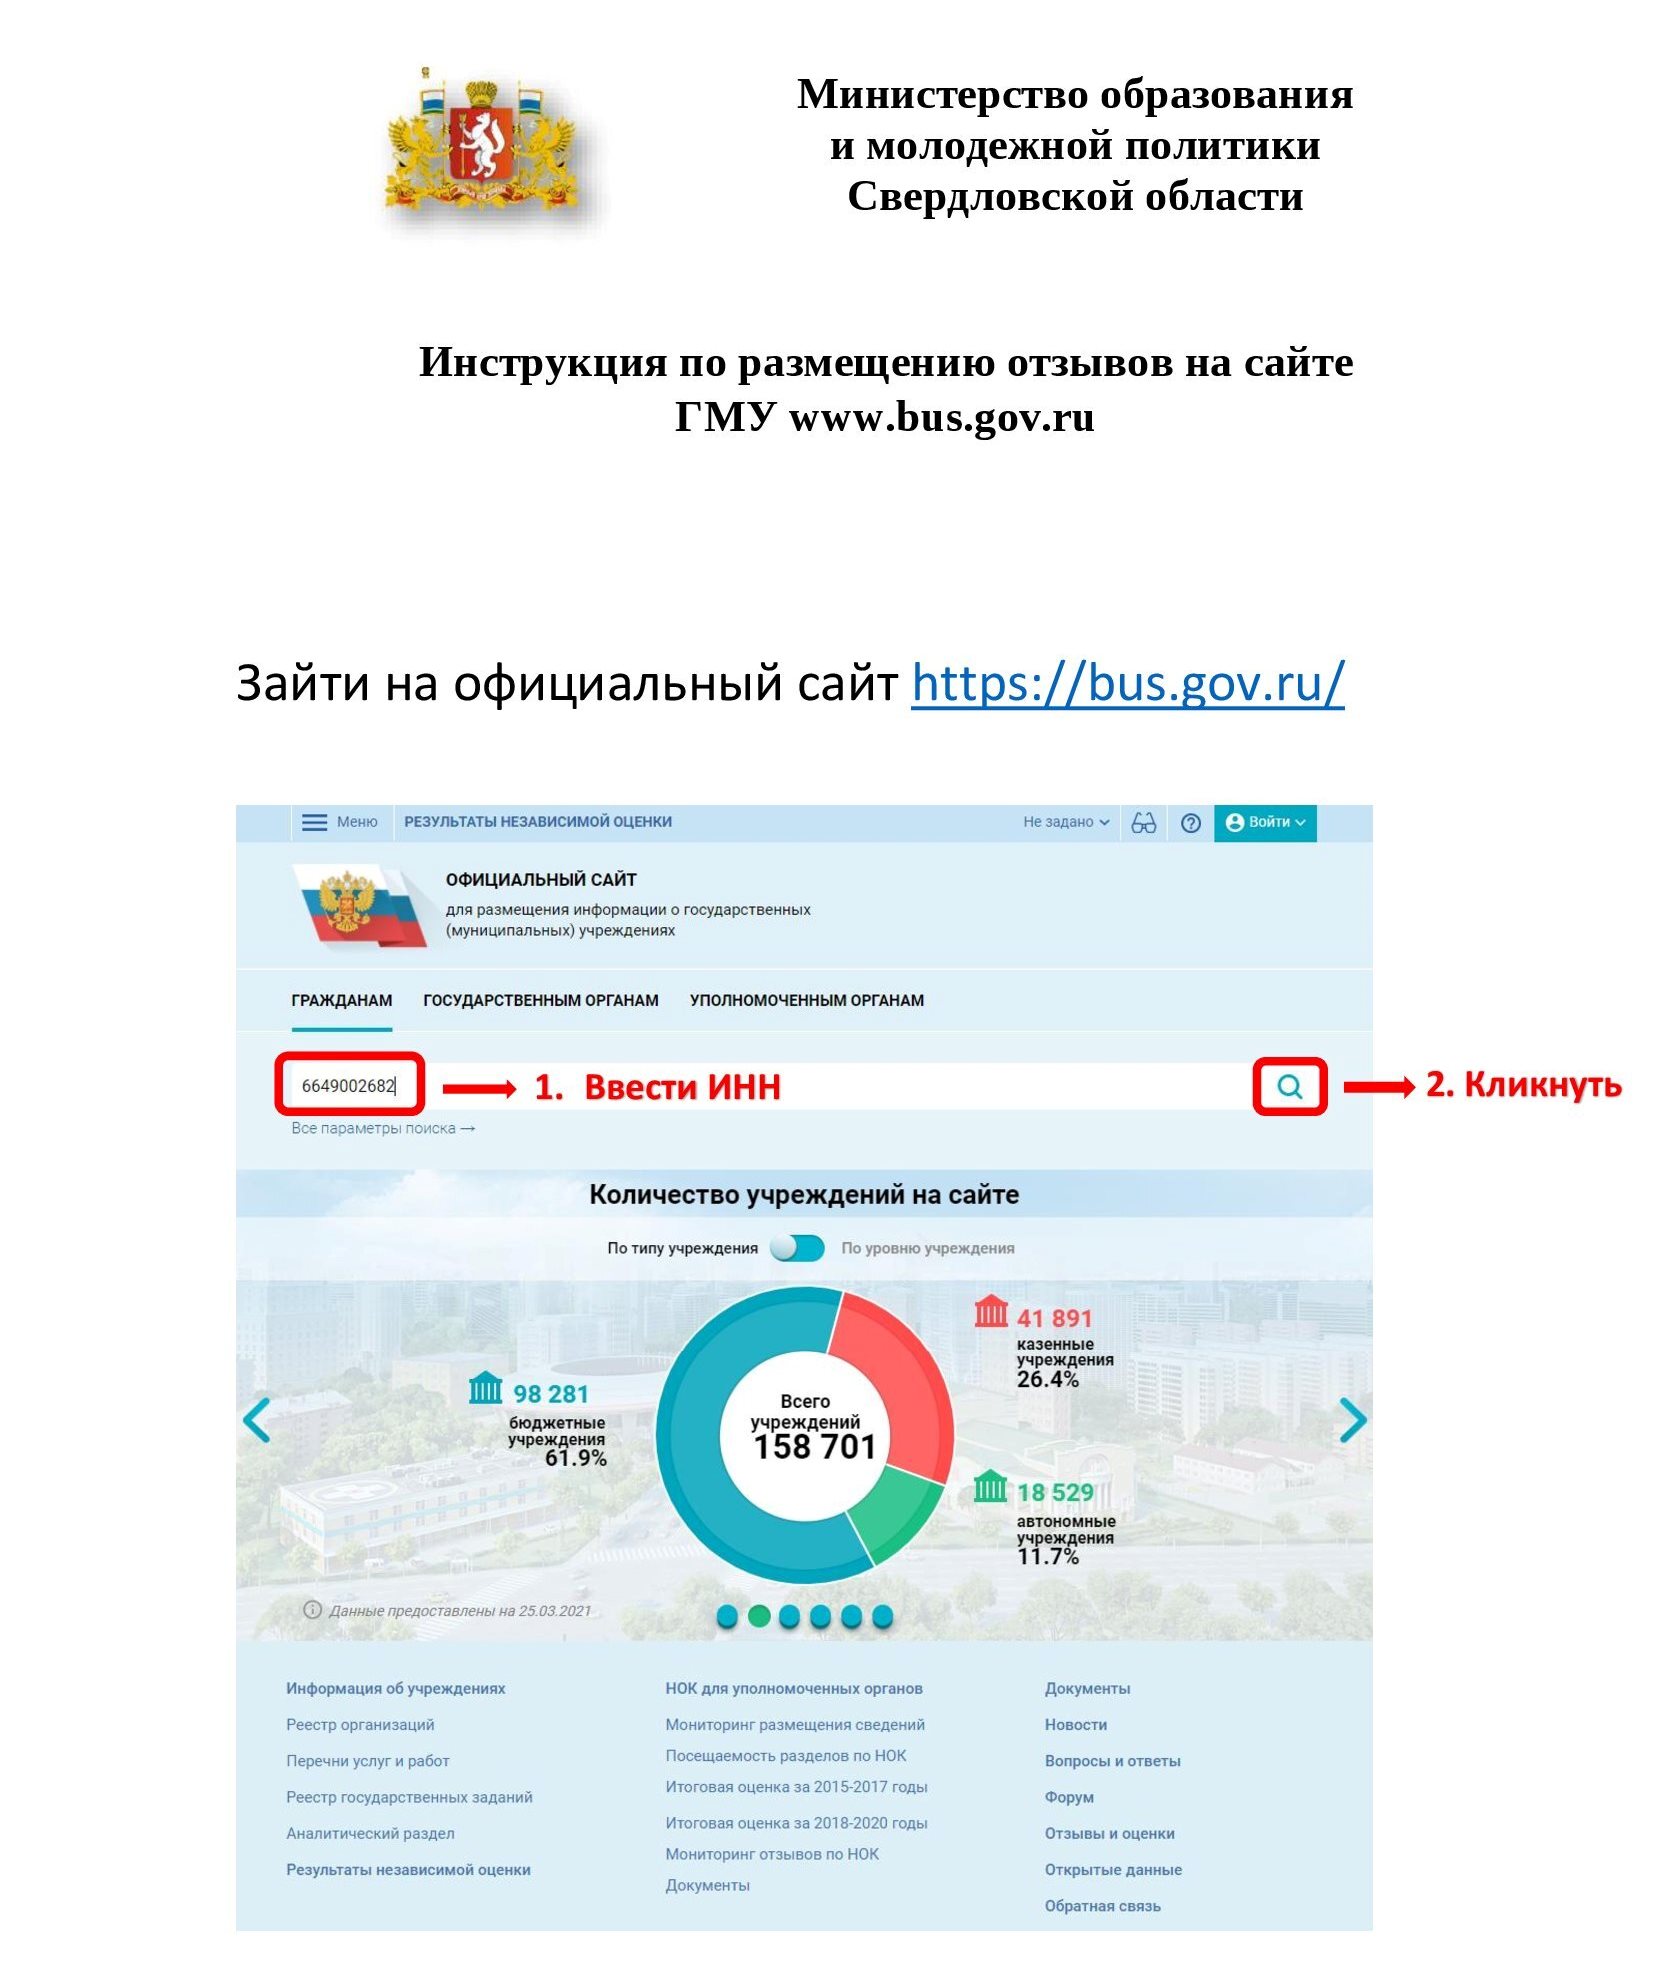 Инструкция по размещению отзывов на сайте bus.gov.ru 00001